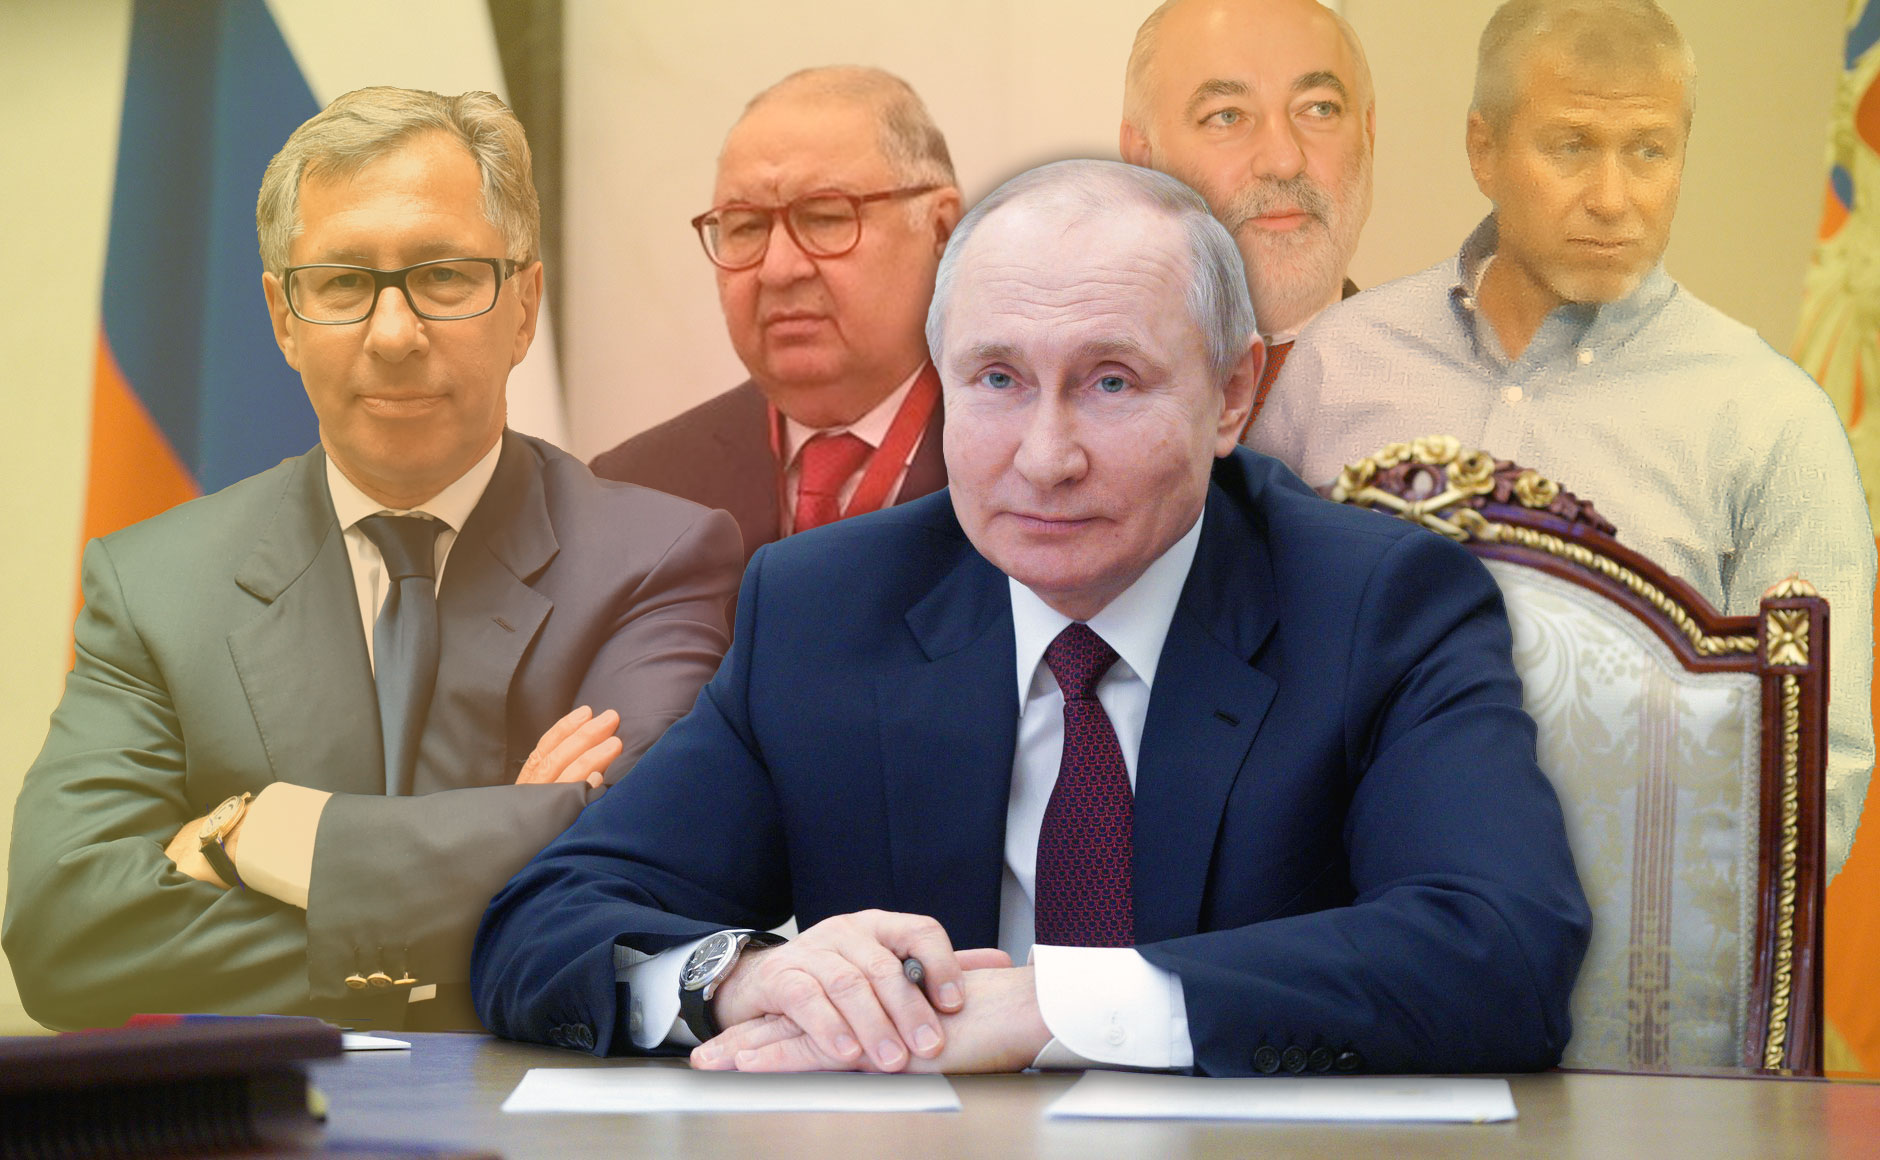 Russland-Expertin: Mit echten Sanktionen gegen die Oligarchen würde der Druck auf Putin schnell steigen